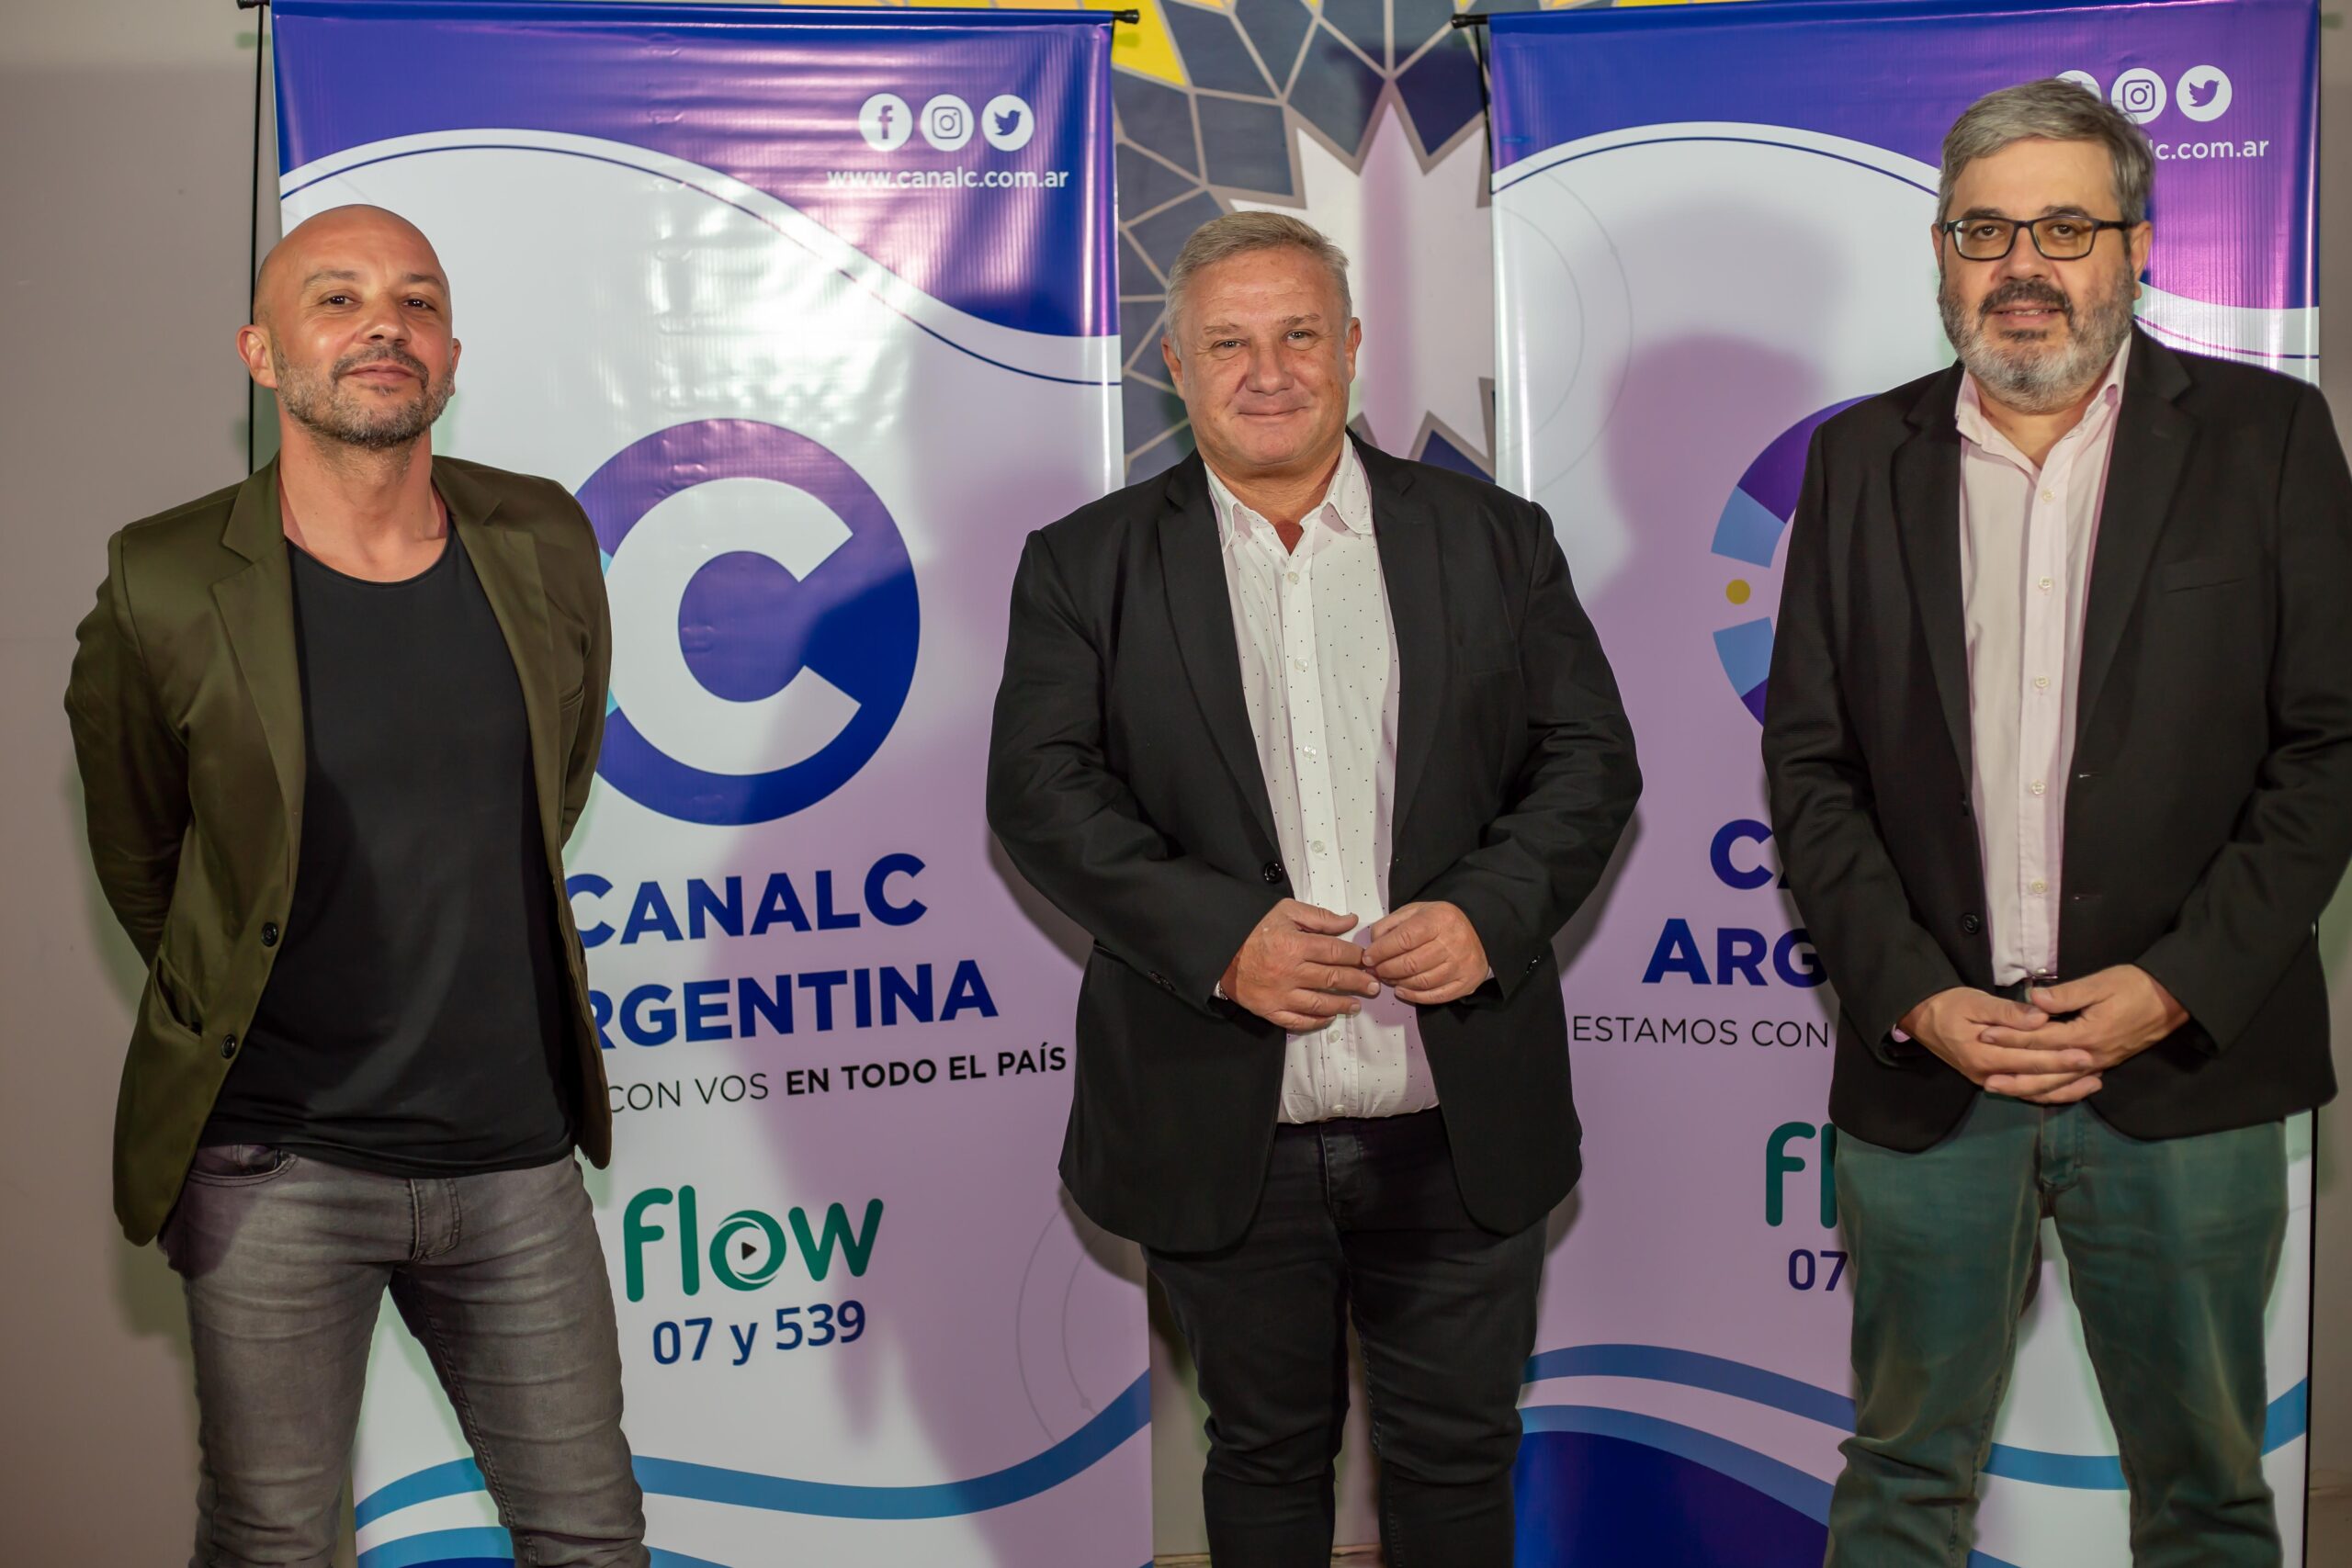 Canal C Argentina: Tonada cordobesa en toda la República Argentina y Uruguay • Canal C